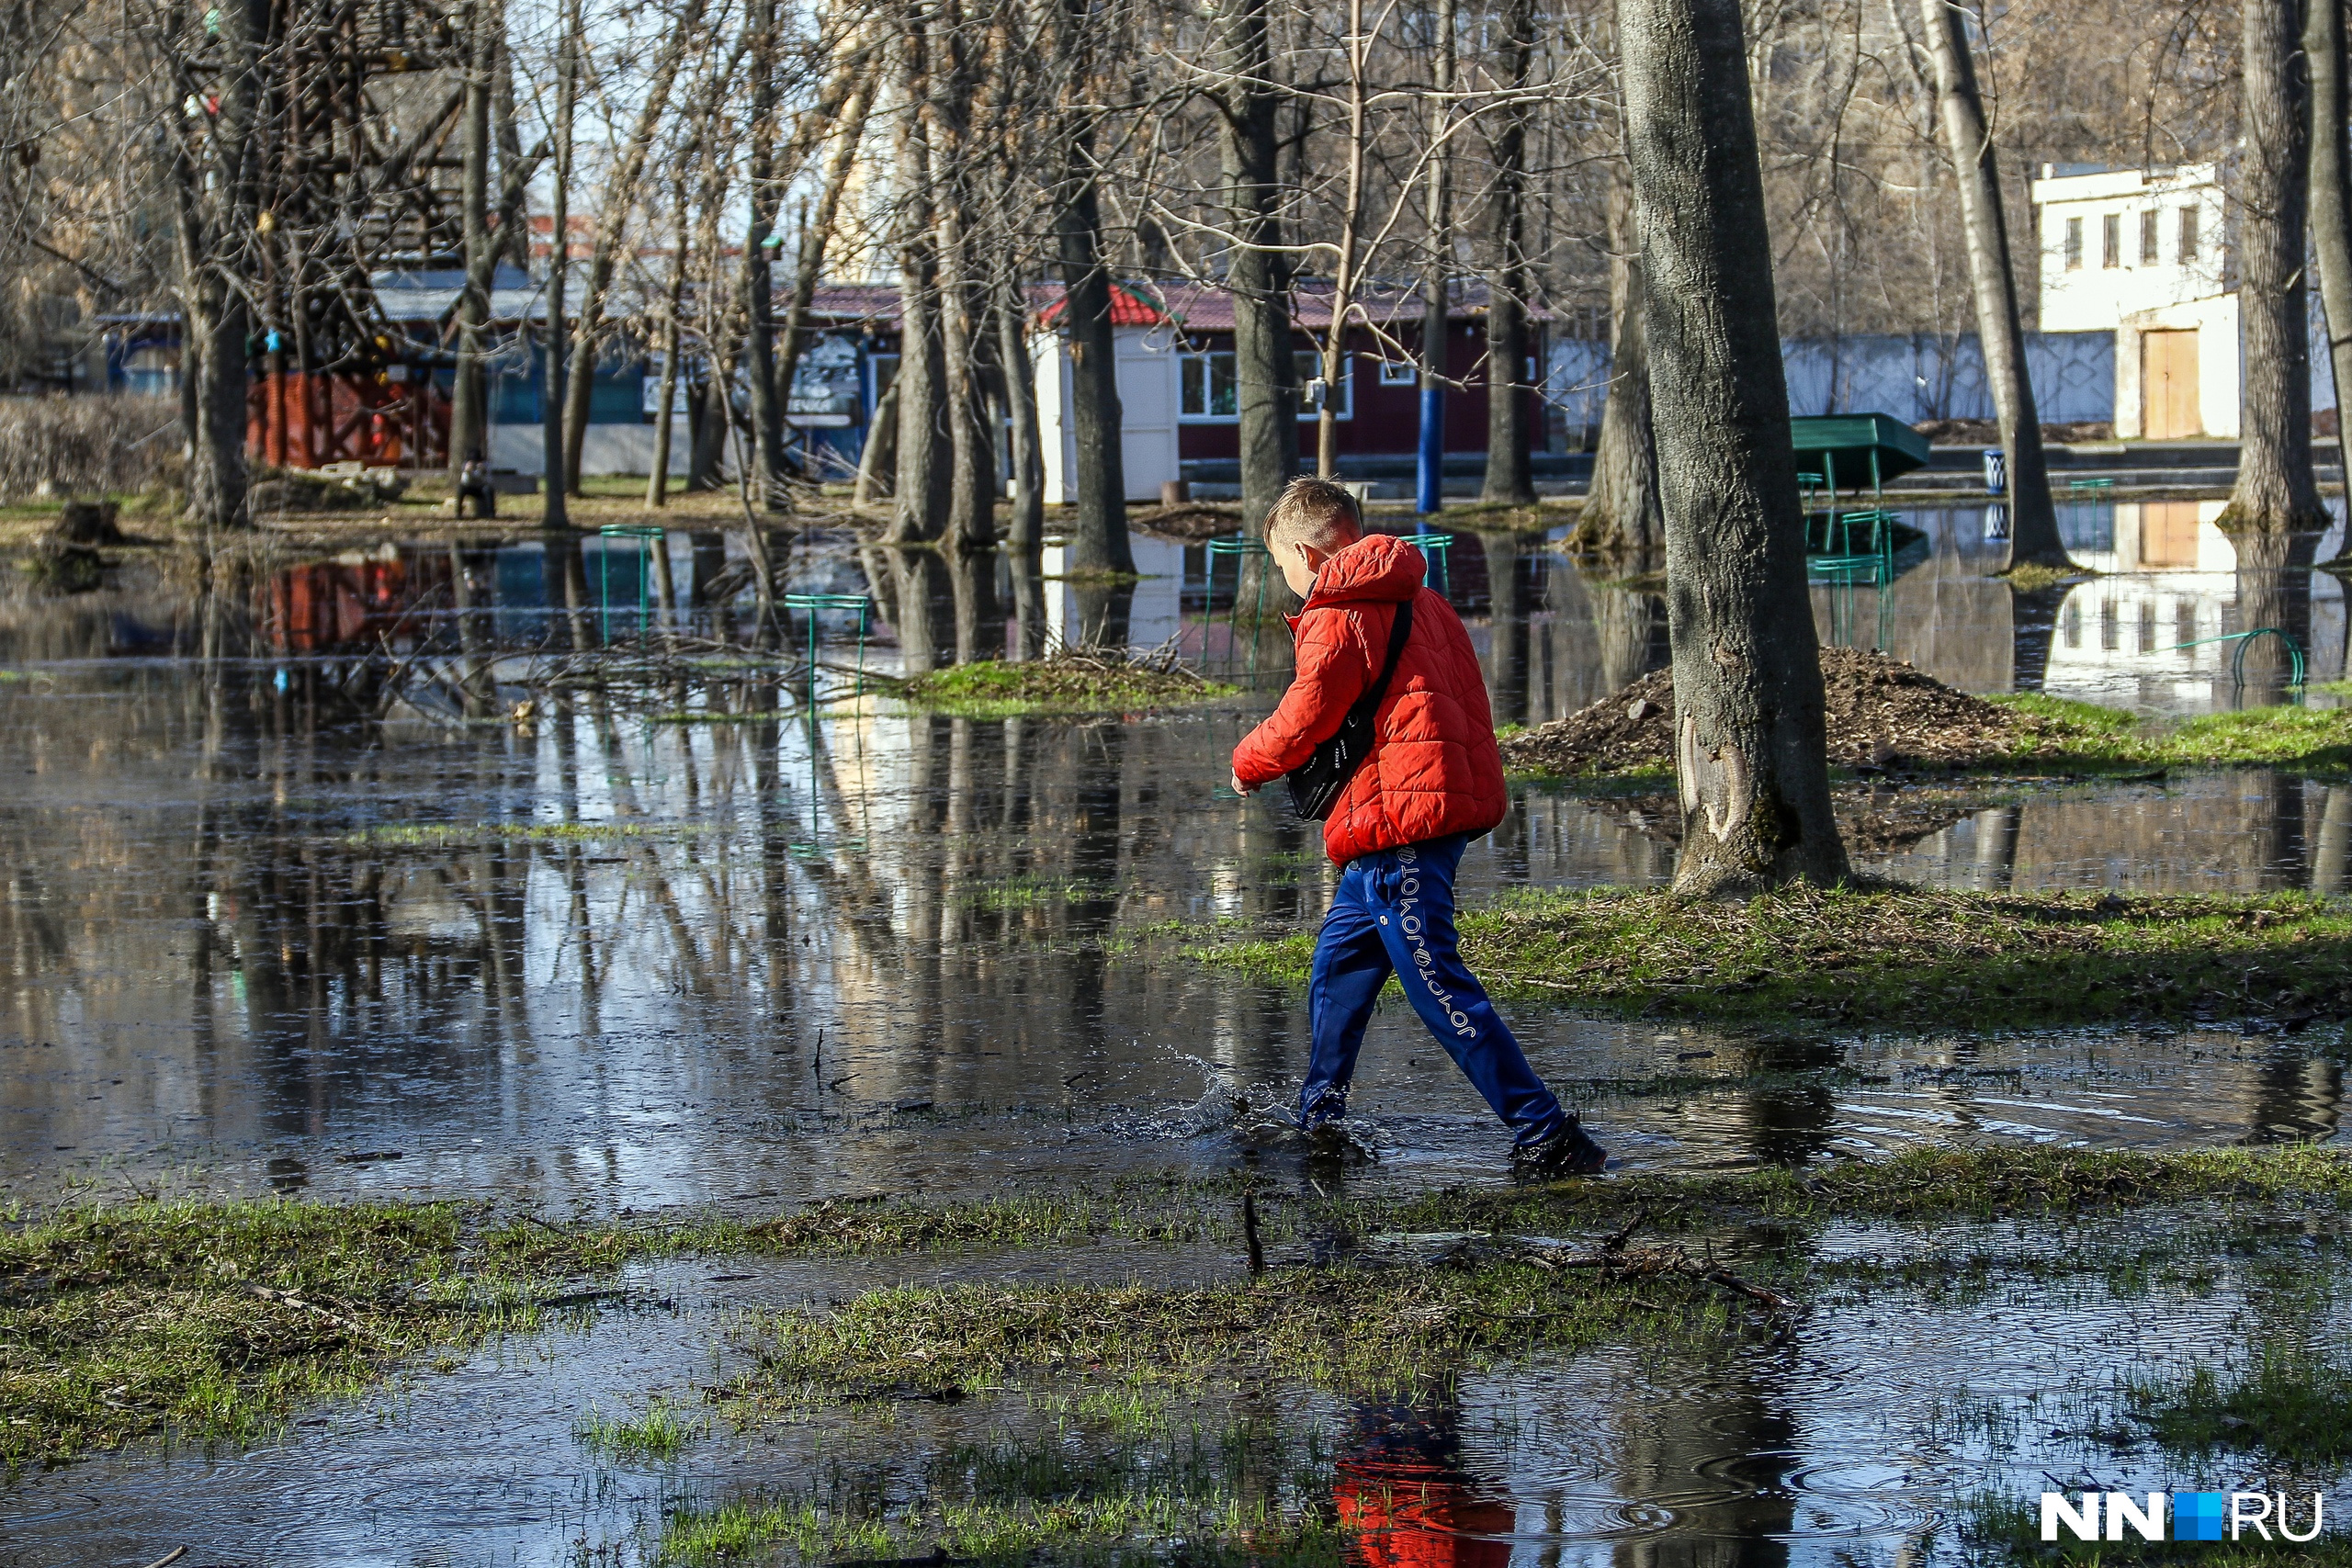 Время футболок и зонтов? Синоптики рассказали, какая погода будет в Нижнем Новгороде в первую неделю апреля